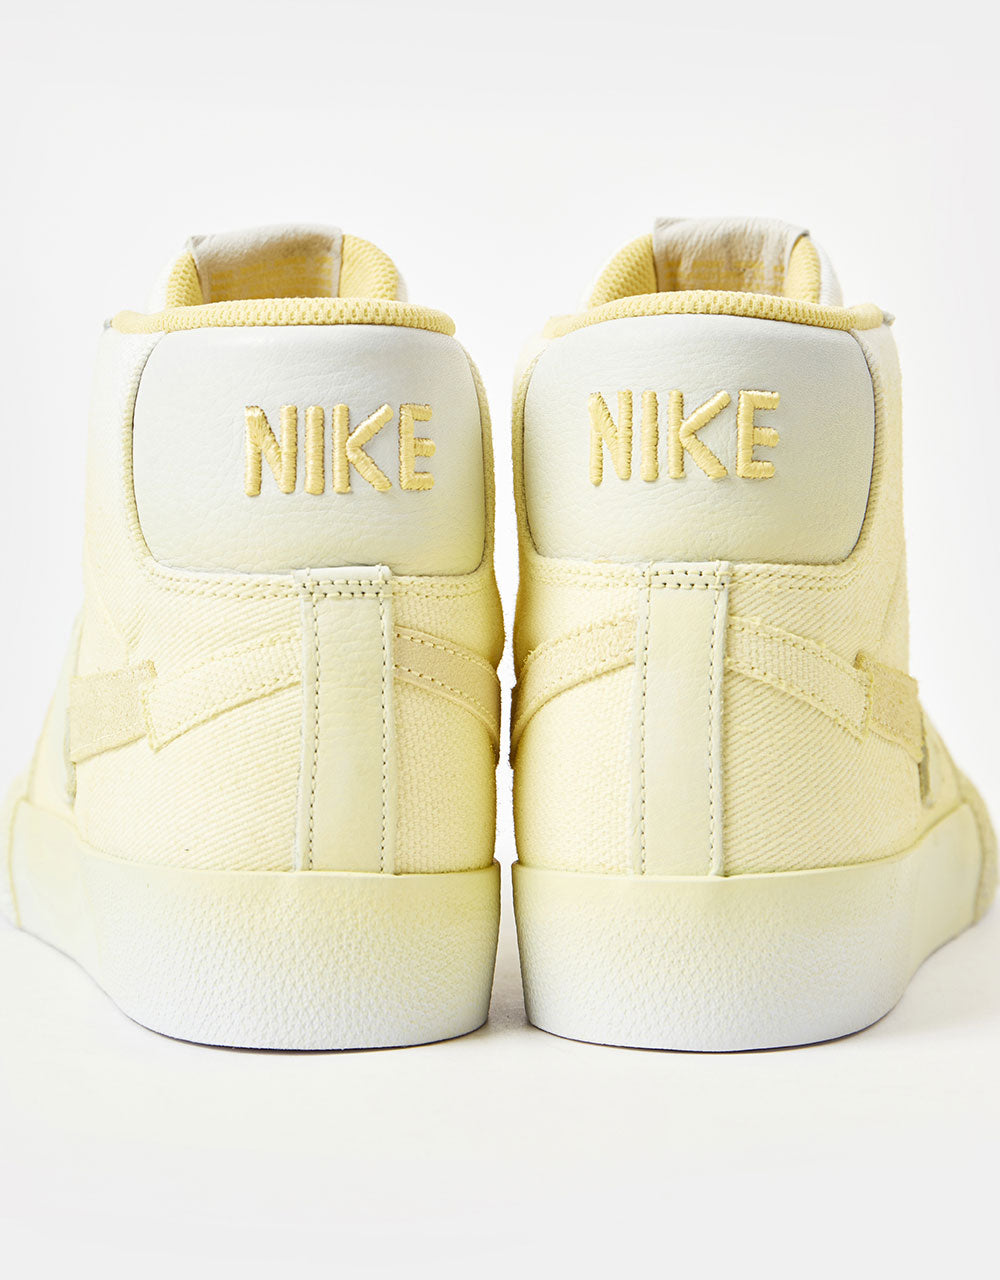 Nike SB Zoom Blazer Mid Premium Skate Shoes - Lemon Wash/Lemon Wash-Lemon Wash-White